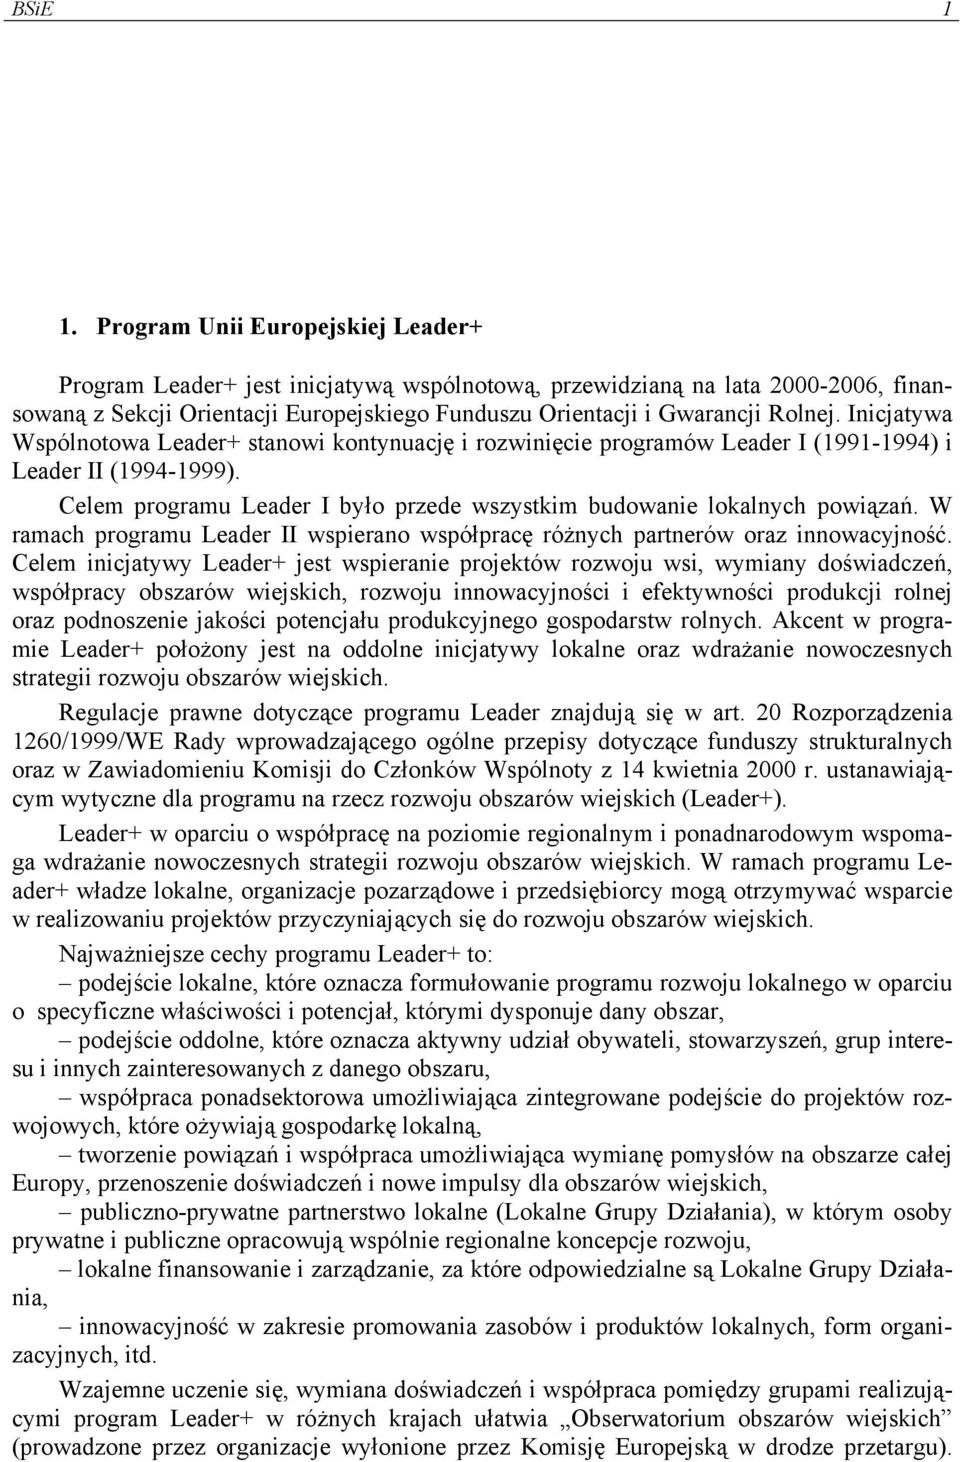 Inicjatywa Wspólnotowa Leader+ stanowi kontynuację i rozwinięcie programów Leader I (1991-1994) i Leader II (1994-1999). Celem programu Leader I było przede wszystkim budowanie lokalnych powiązań.